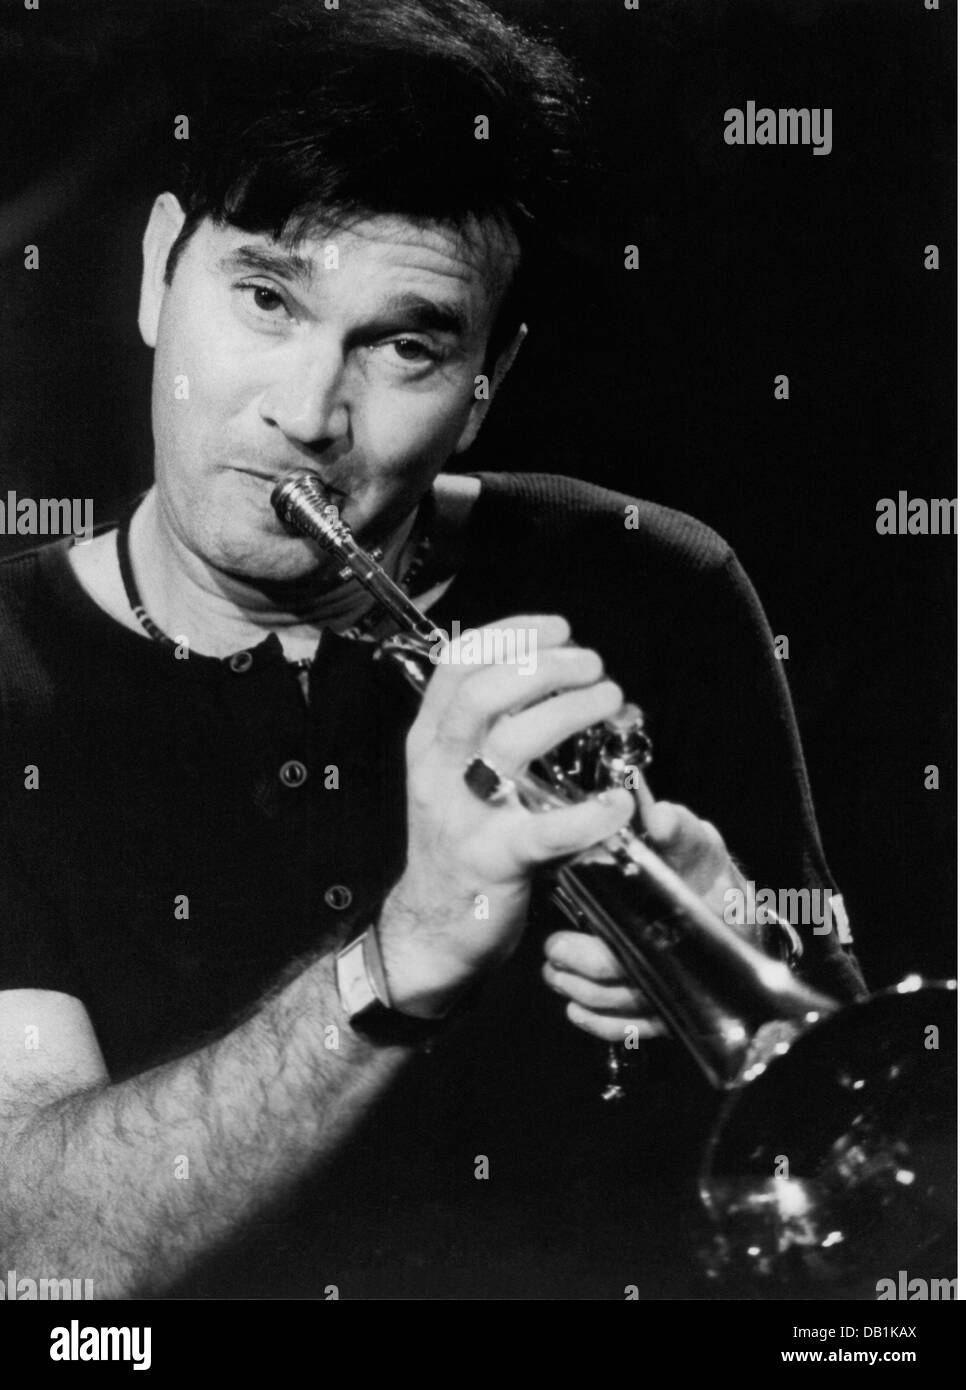 Braun, Rick, * 6.7.1955, musicien américain (jazz), trompettiste, demi-longueur, pendant la scène, Montreux, 2000, Banque D'Images